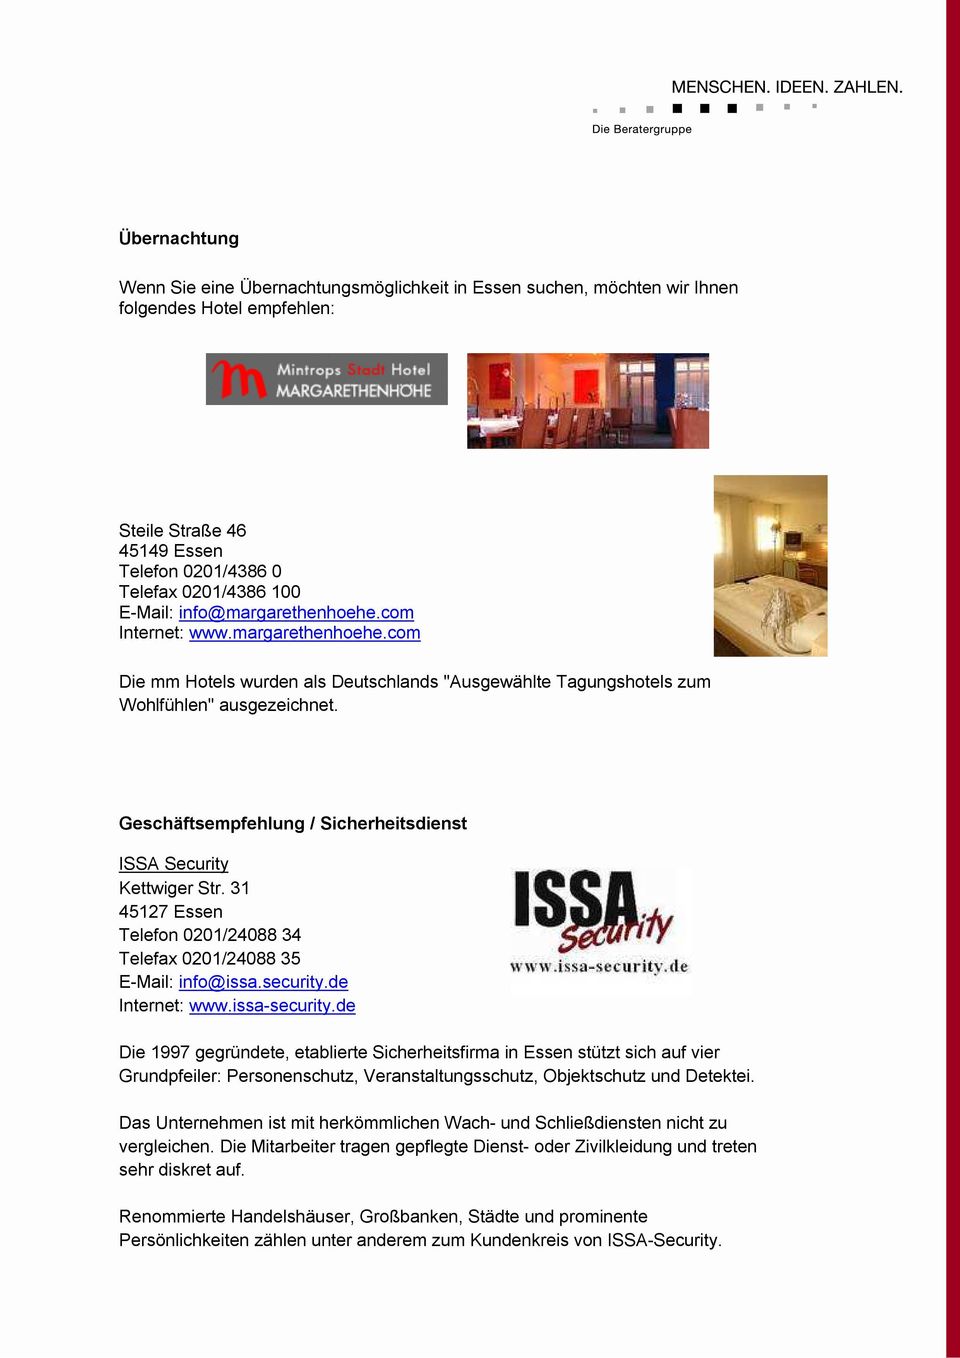 Geschäftsempfehlung / Sicherheitsdienst ISSA Security Kettwiger Str. 31 45127 Essen Telefon 0201/24088 34 Telefax 0201/24088 35 E-Mail: info@issa.security.de Internet: www.issa-security.